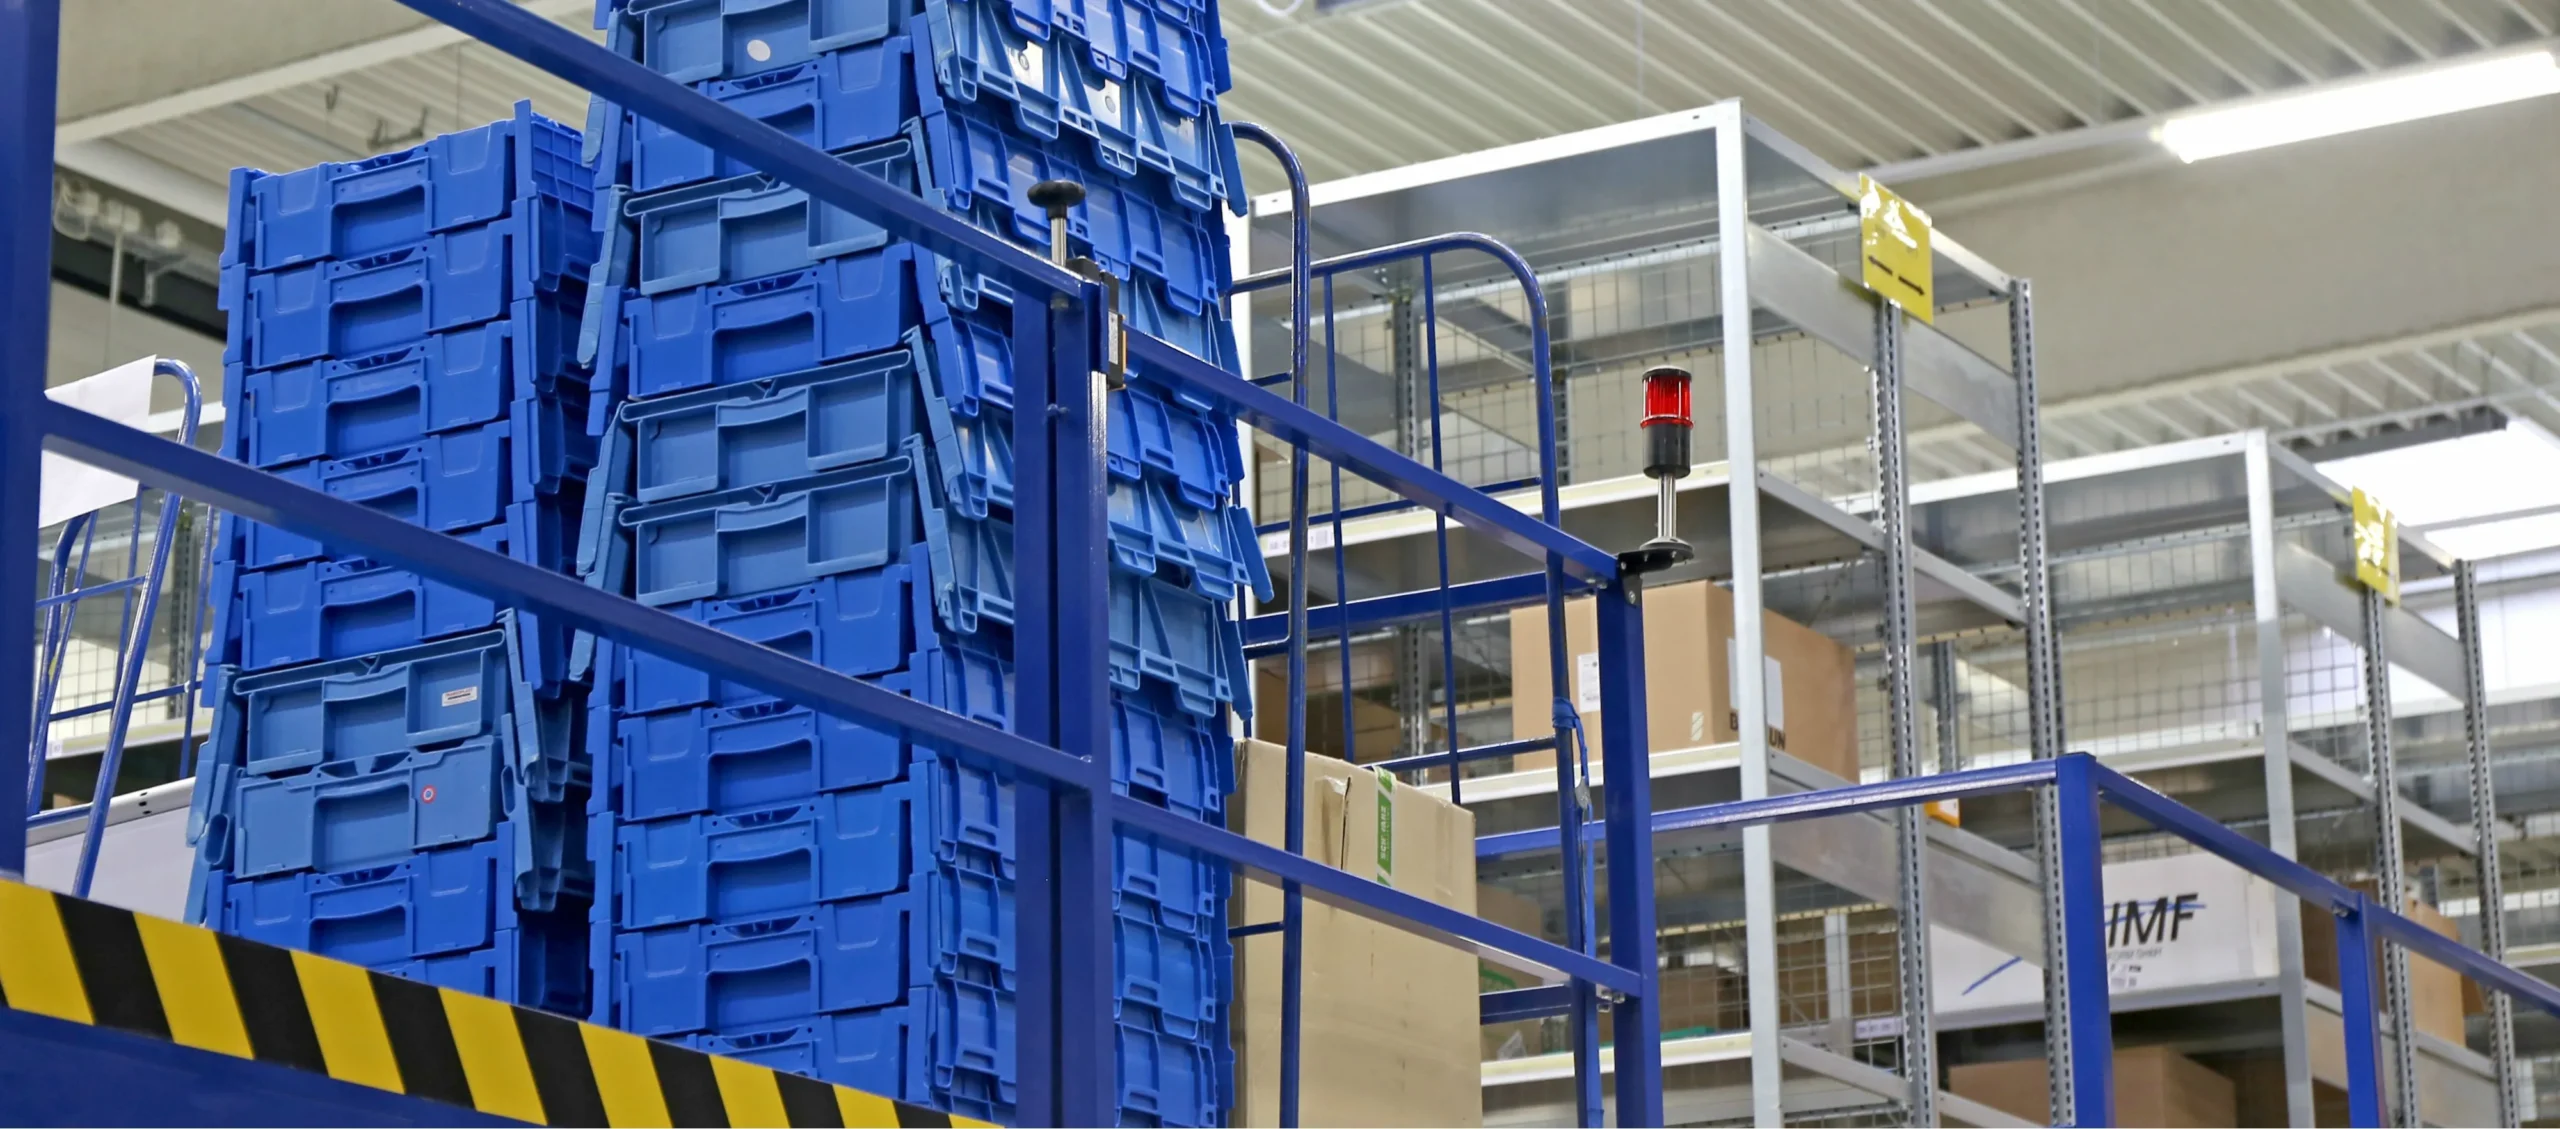 blauwe distributiebakken zichtbaar in een magazijn